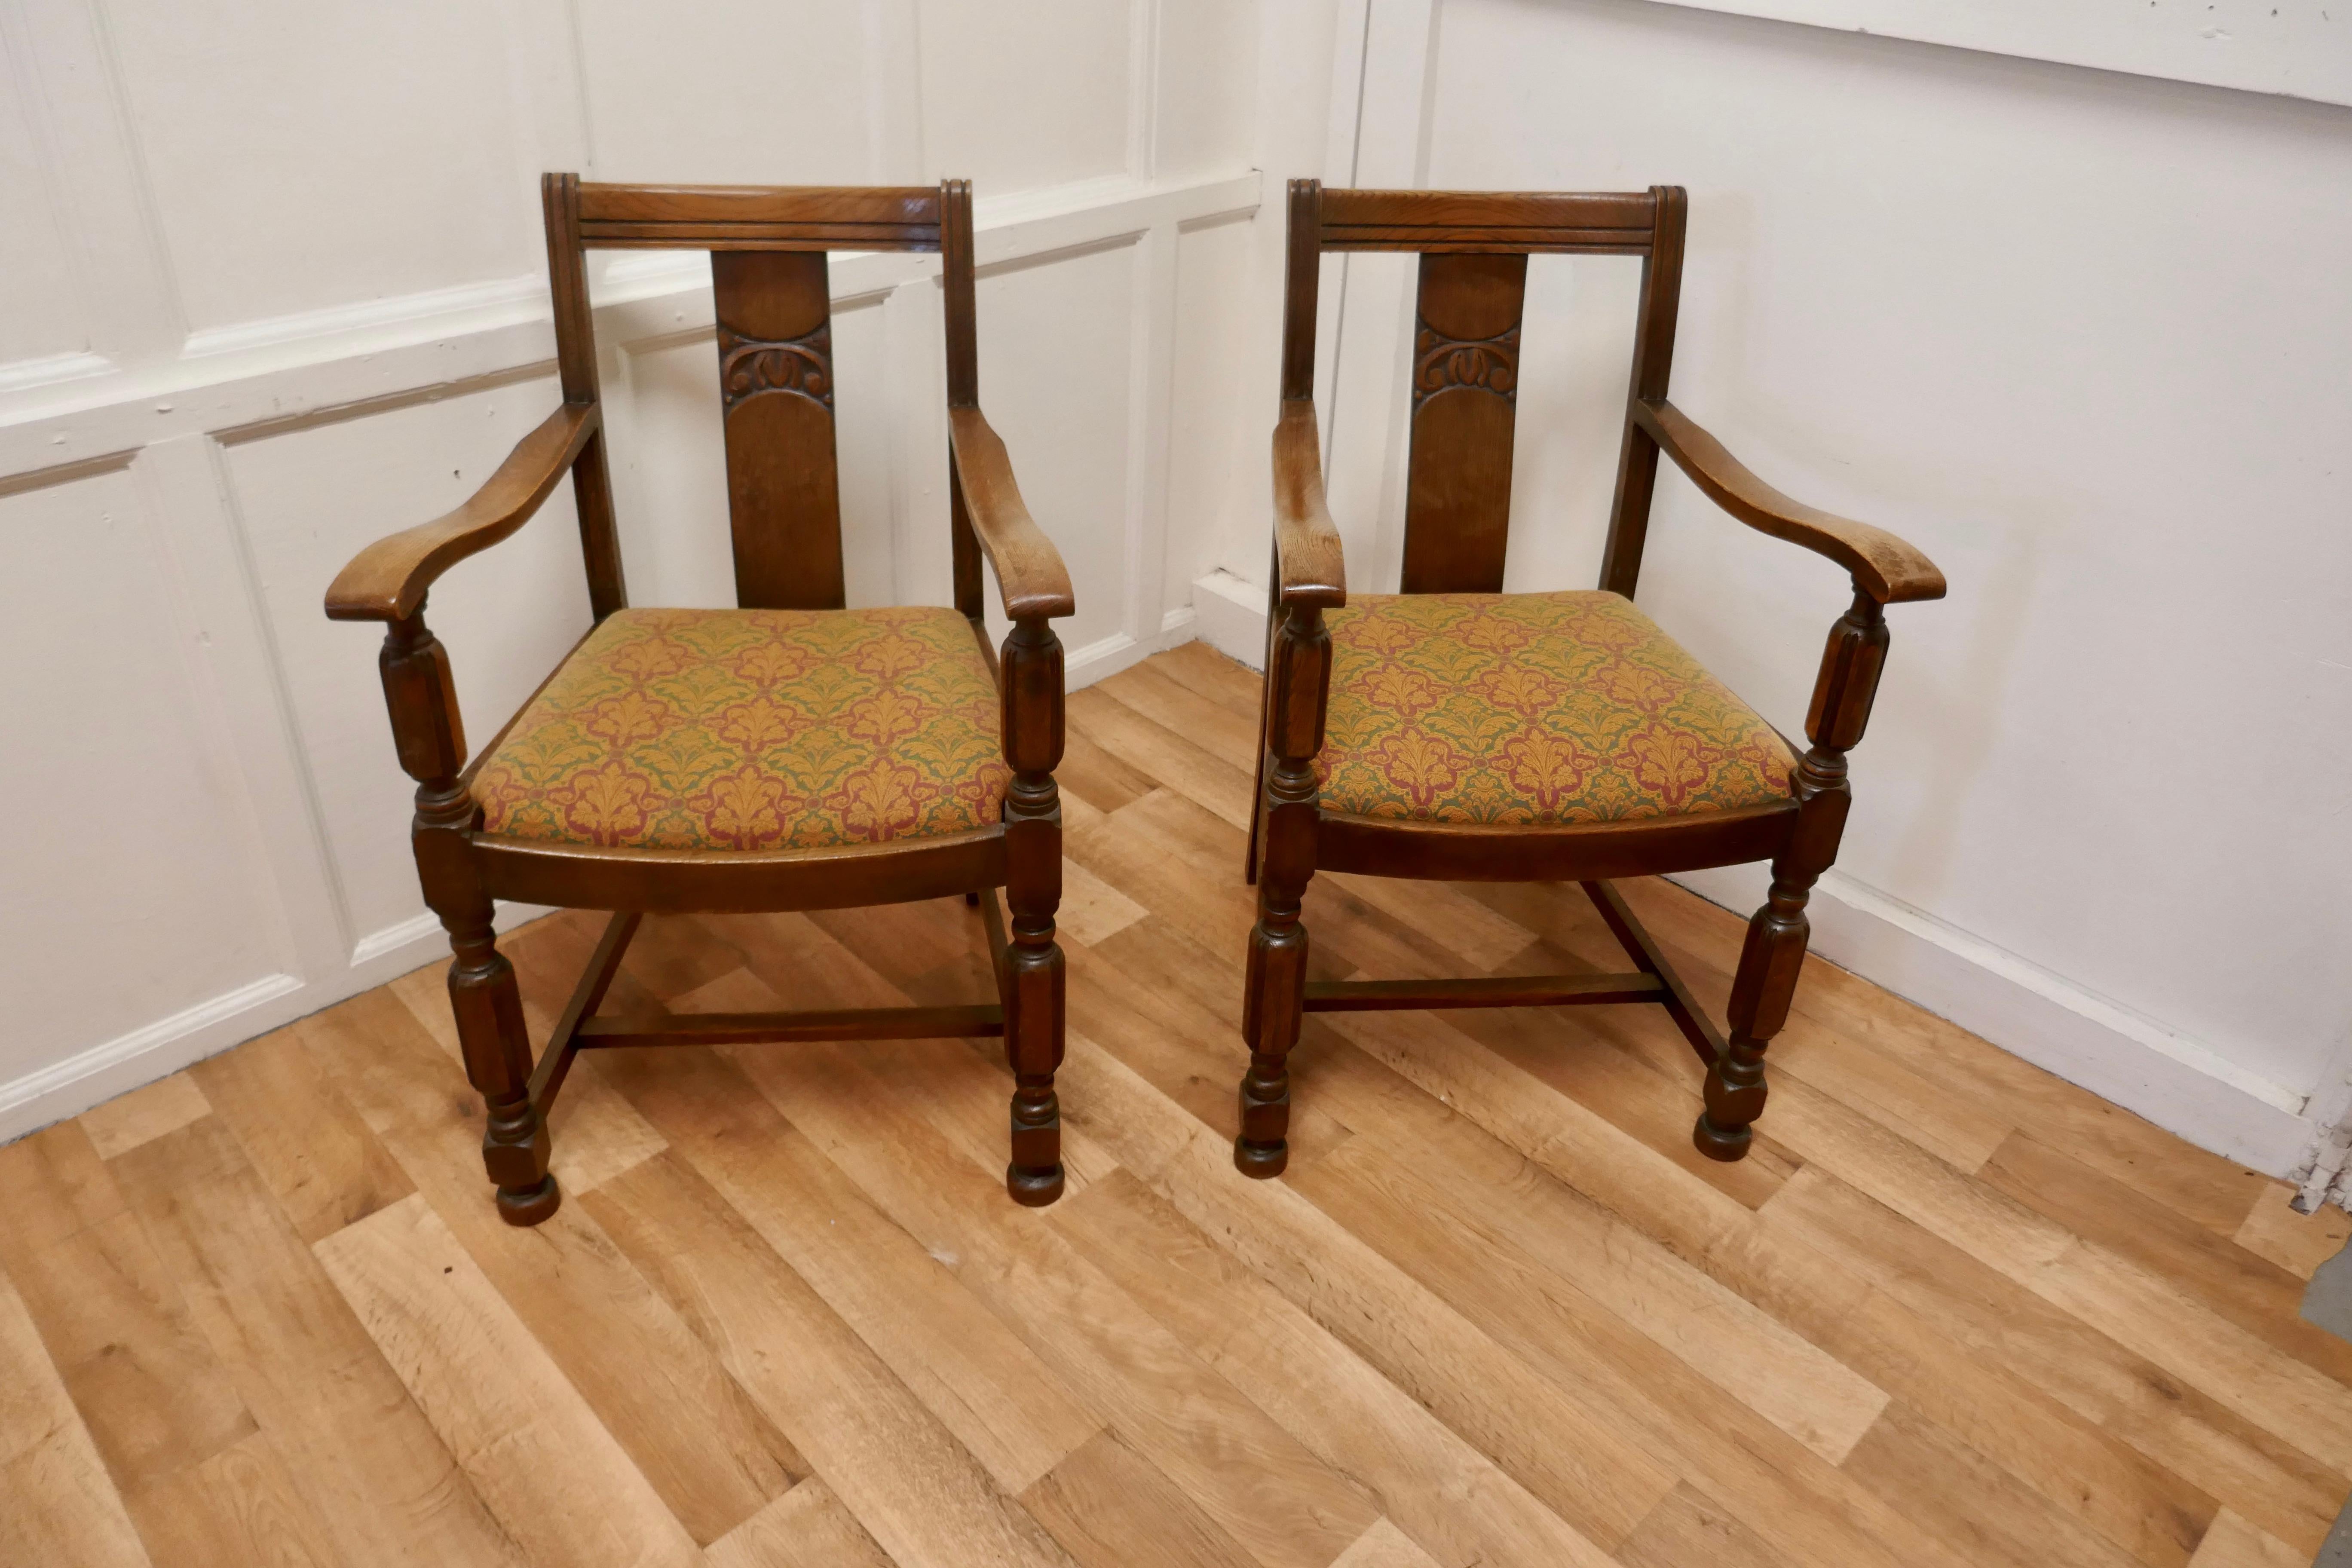 Paire de chaises de sculpteur Arts & Crafts en chêne doré.

Une bonne paire de chaises très solides et robustes, le chêne a une belle patine et la tapisserie est bonne 
Les chaises ont une hauteur de 33 pouces, une largeur de 47 pouces et une